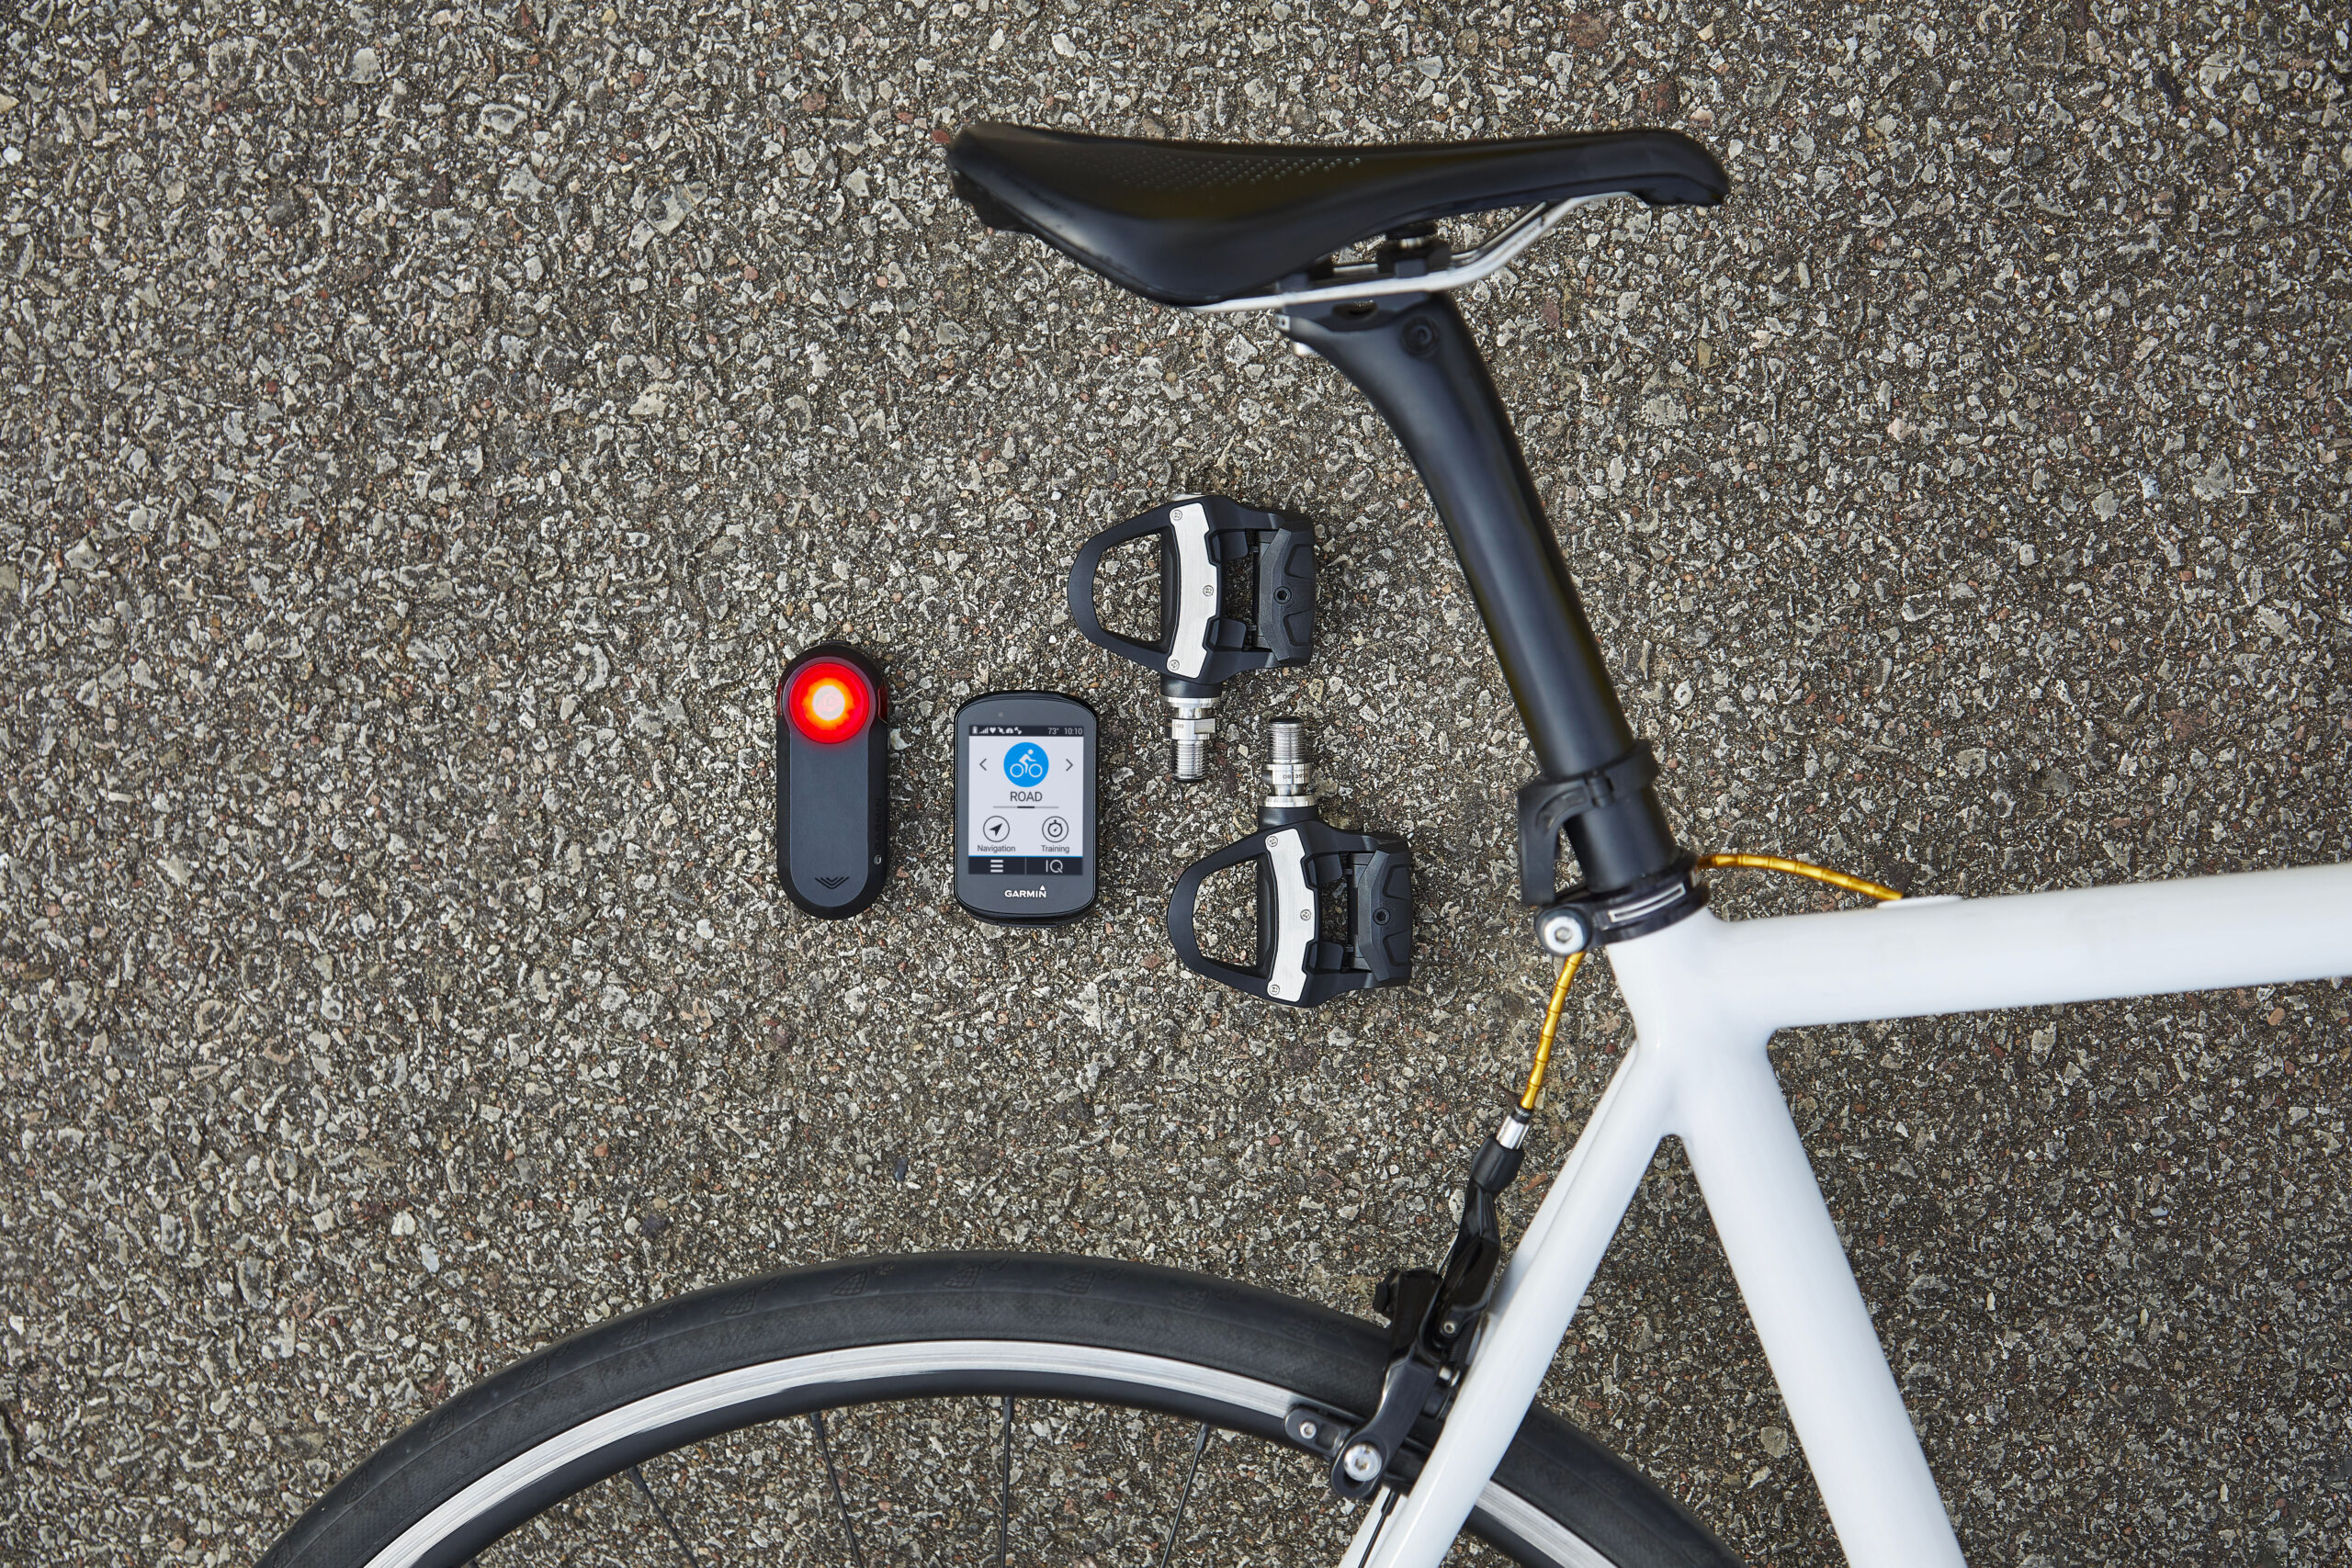 Garmin Capteur de vitesse et capteur de cadence vélo - Electronique  Accessoires montres/ Bracelets